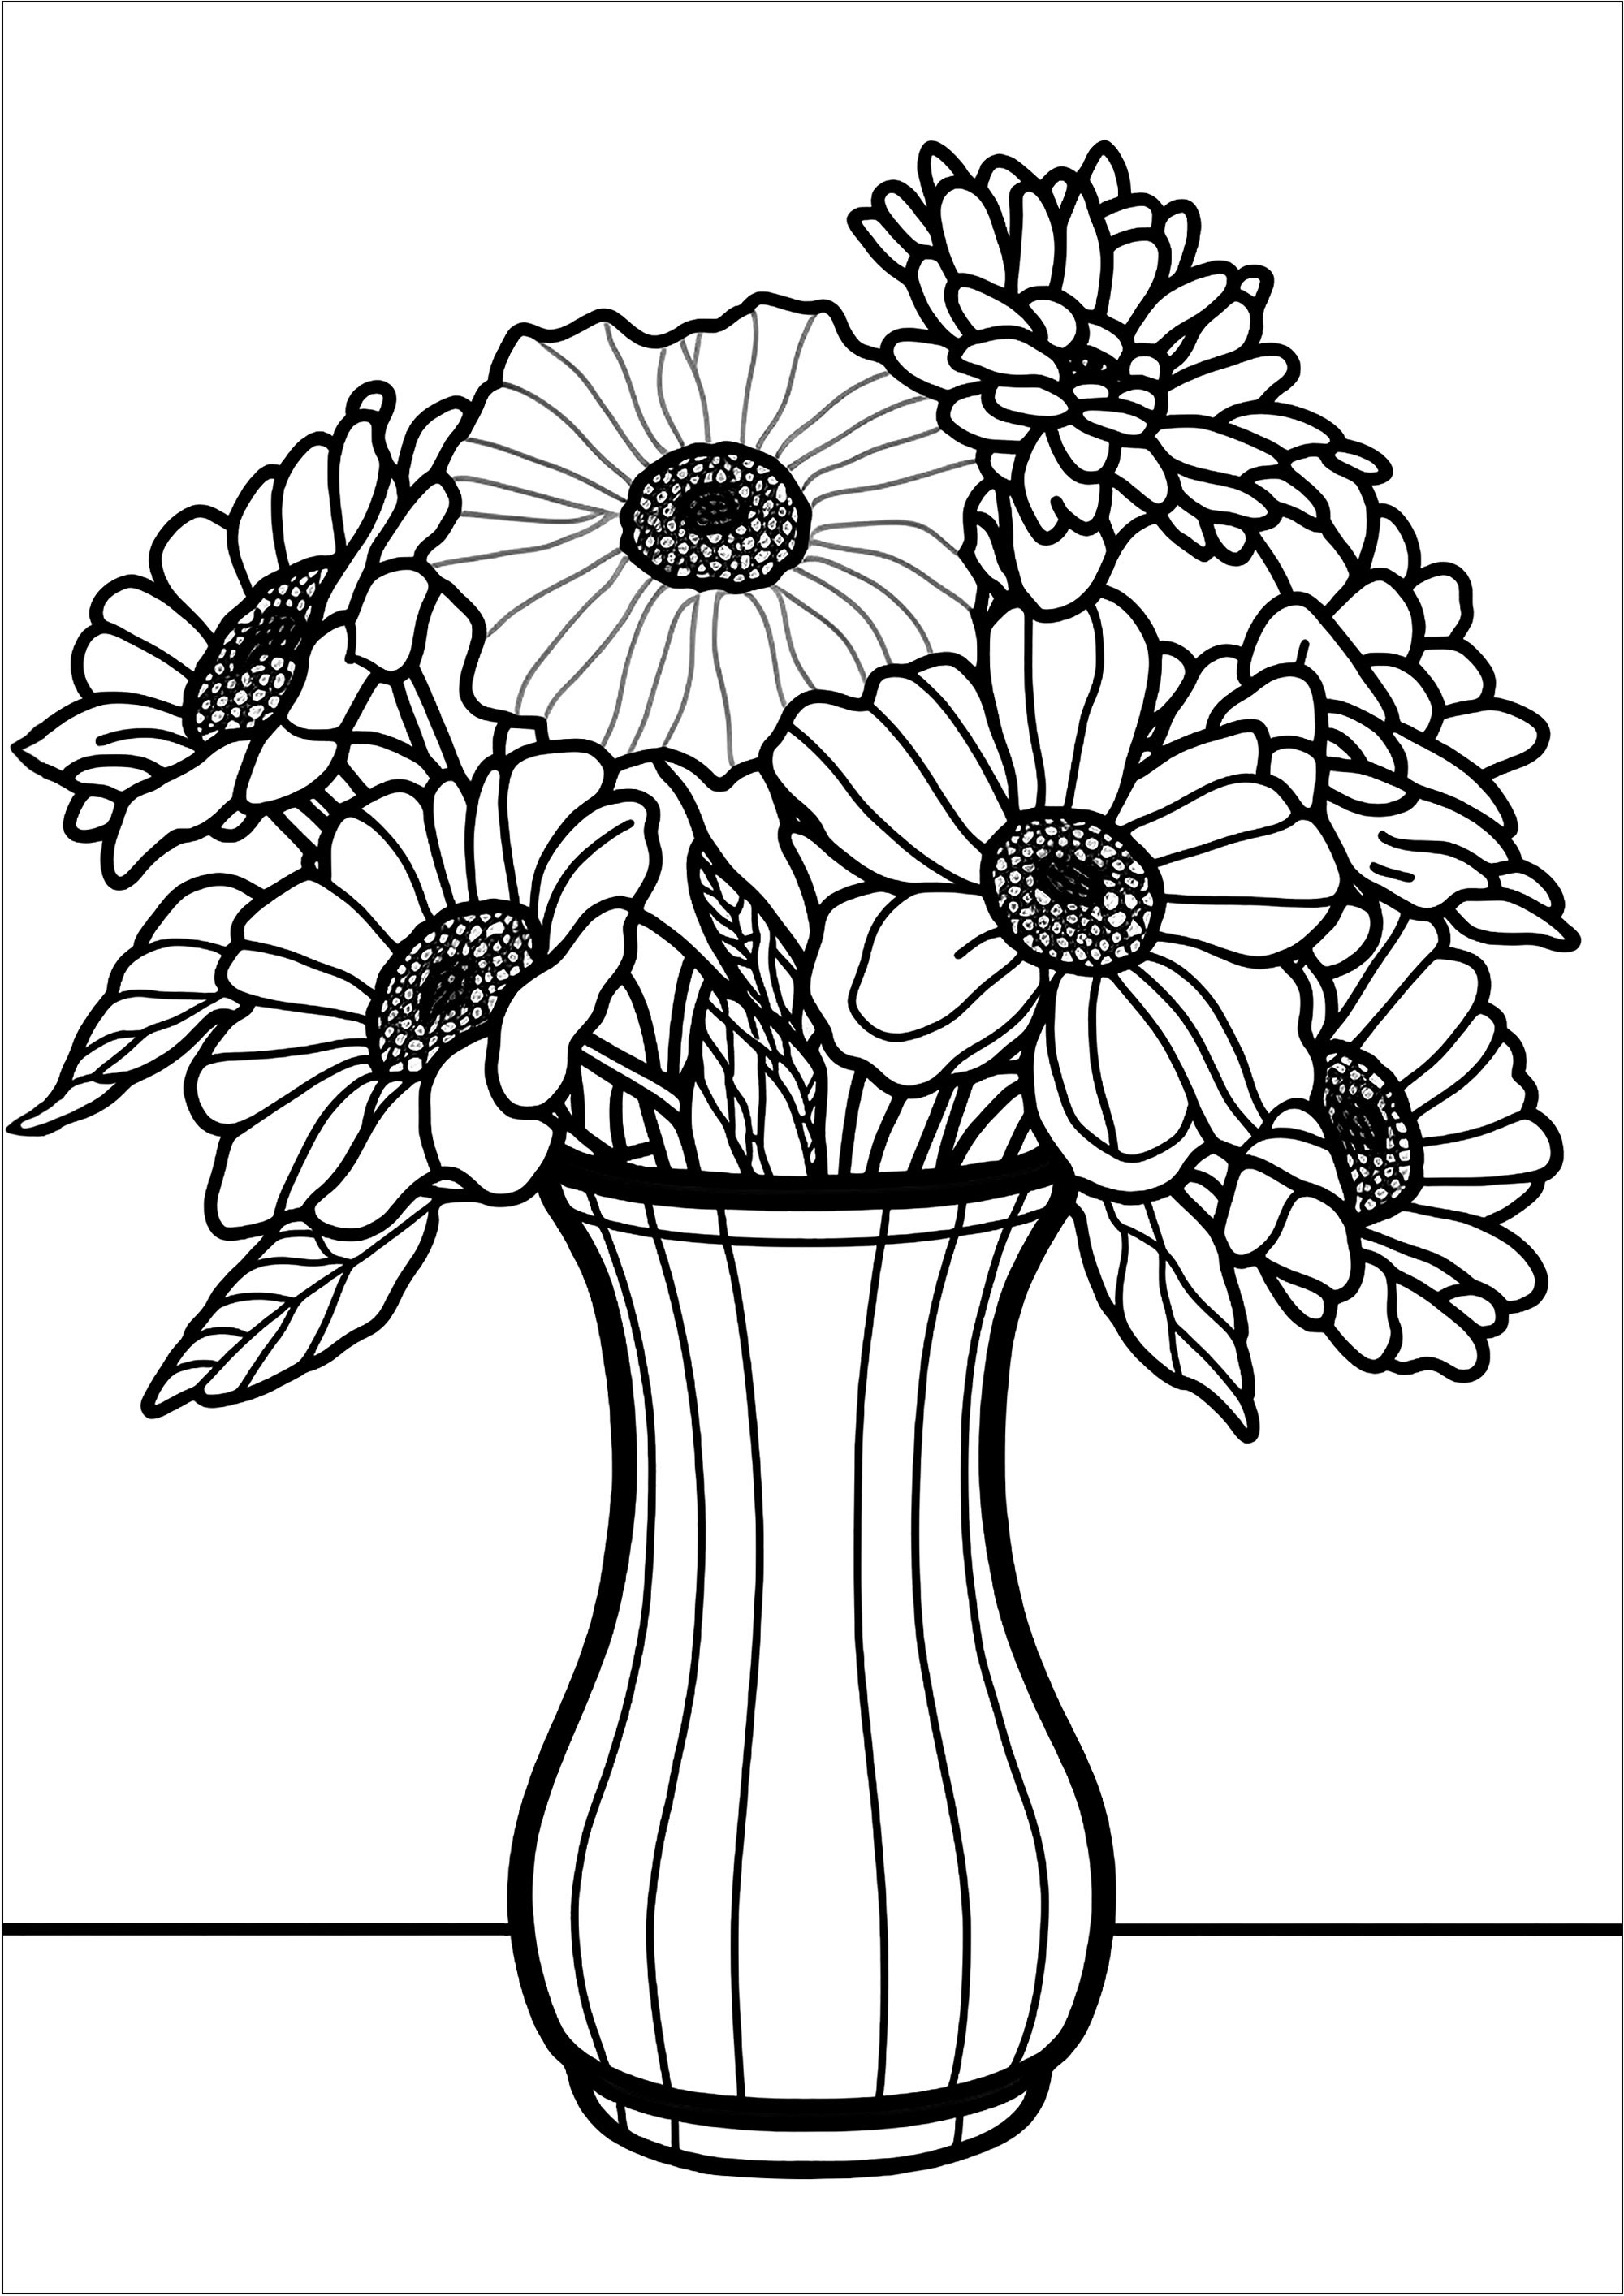 Joli dessin aux lignes épaisses d'un bouquet de fleurs dans un vase. Les enfants peuvent s'amuser à choisir des couleurs différentes pour chaque fleur et pour le vase. Ils peuvent même ajouter des détails supplémentaires, comme des papillons ou des petits animaux, pour rendre leur création encore plus unique.